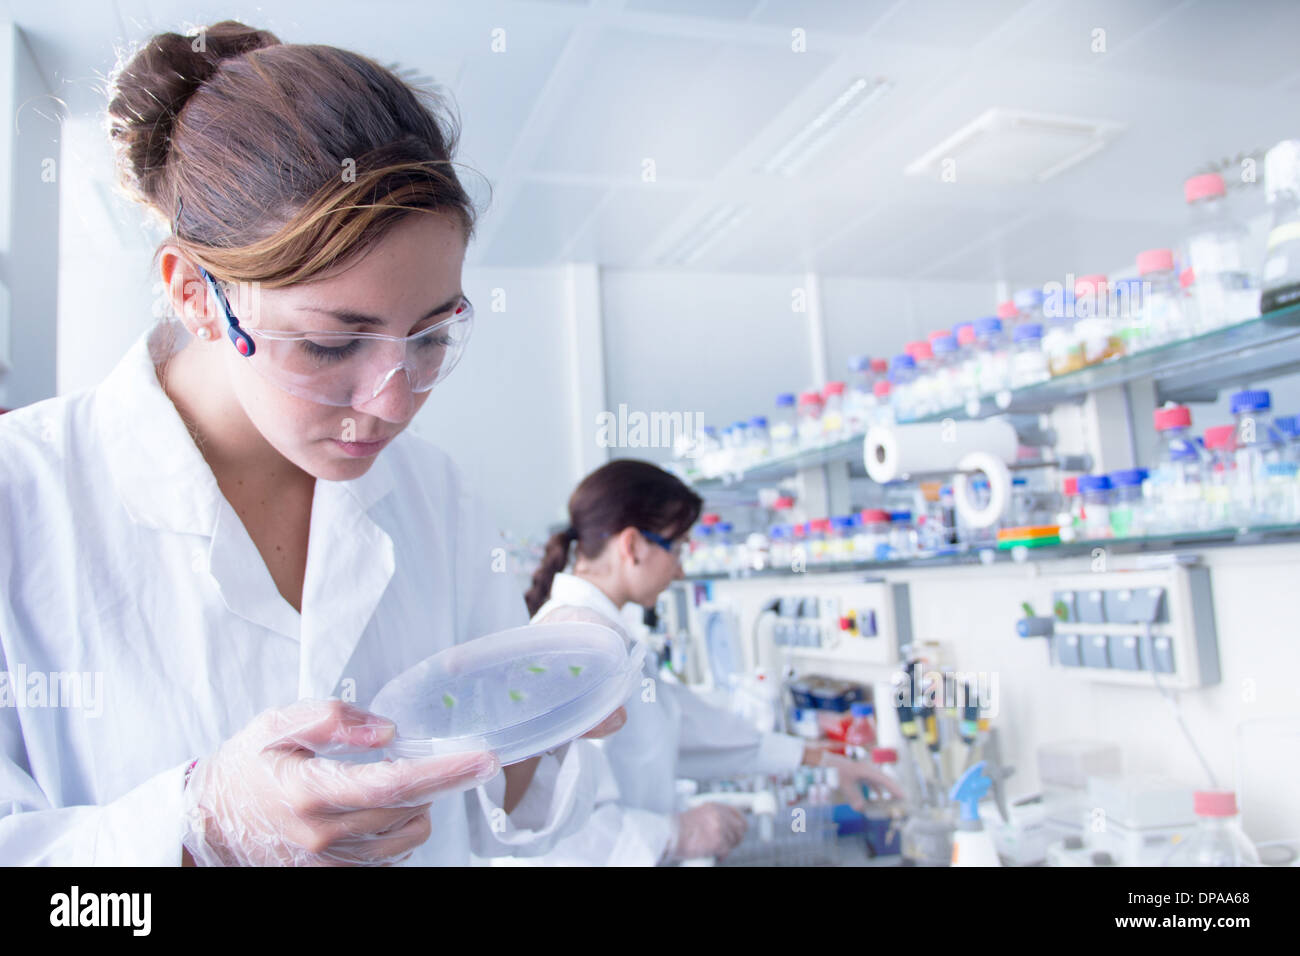 Biology student looking at petri dish Stock Photo